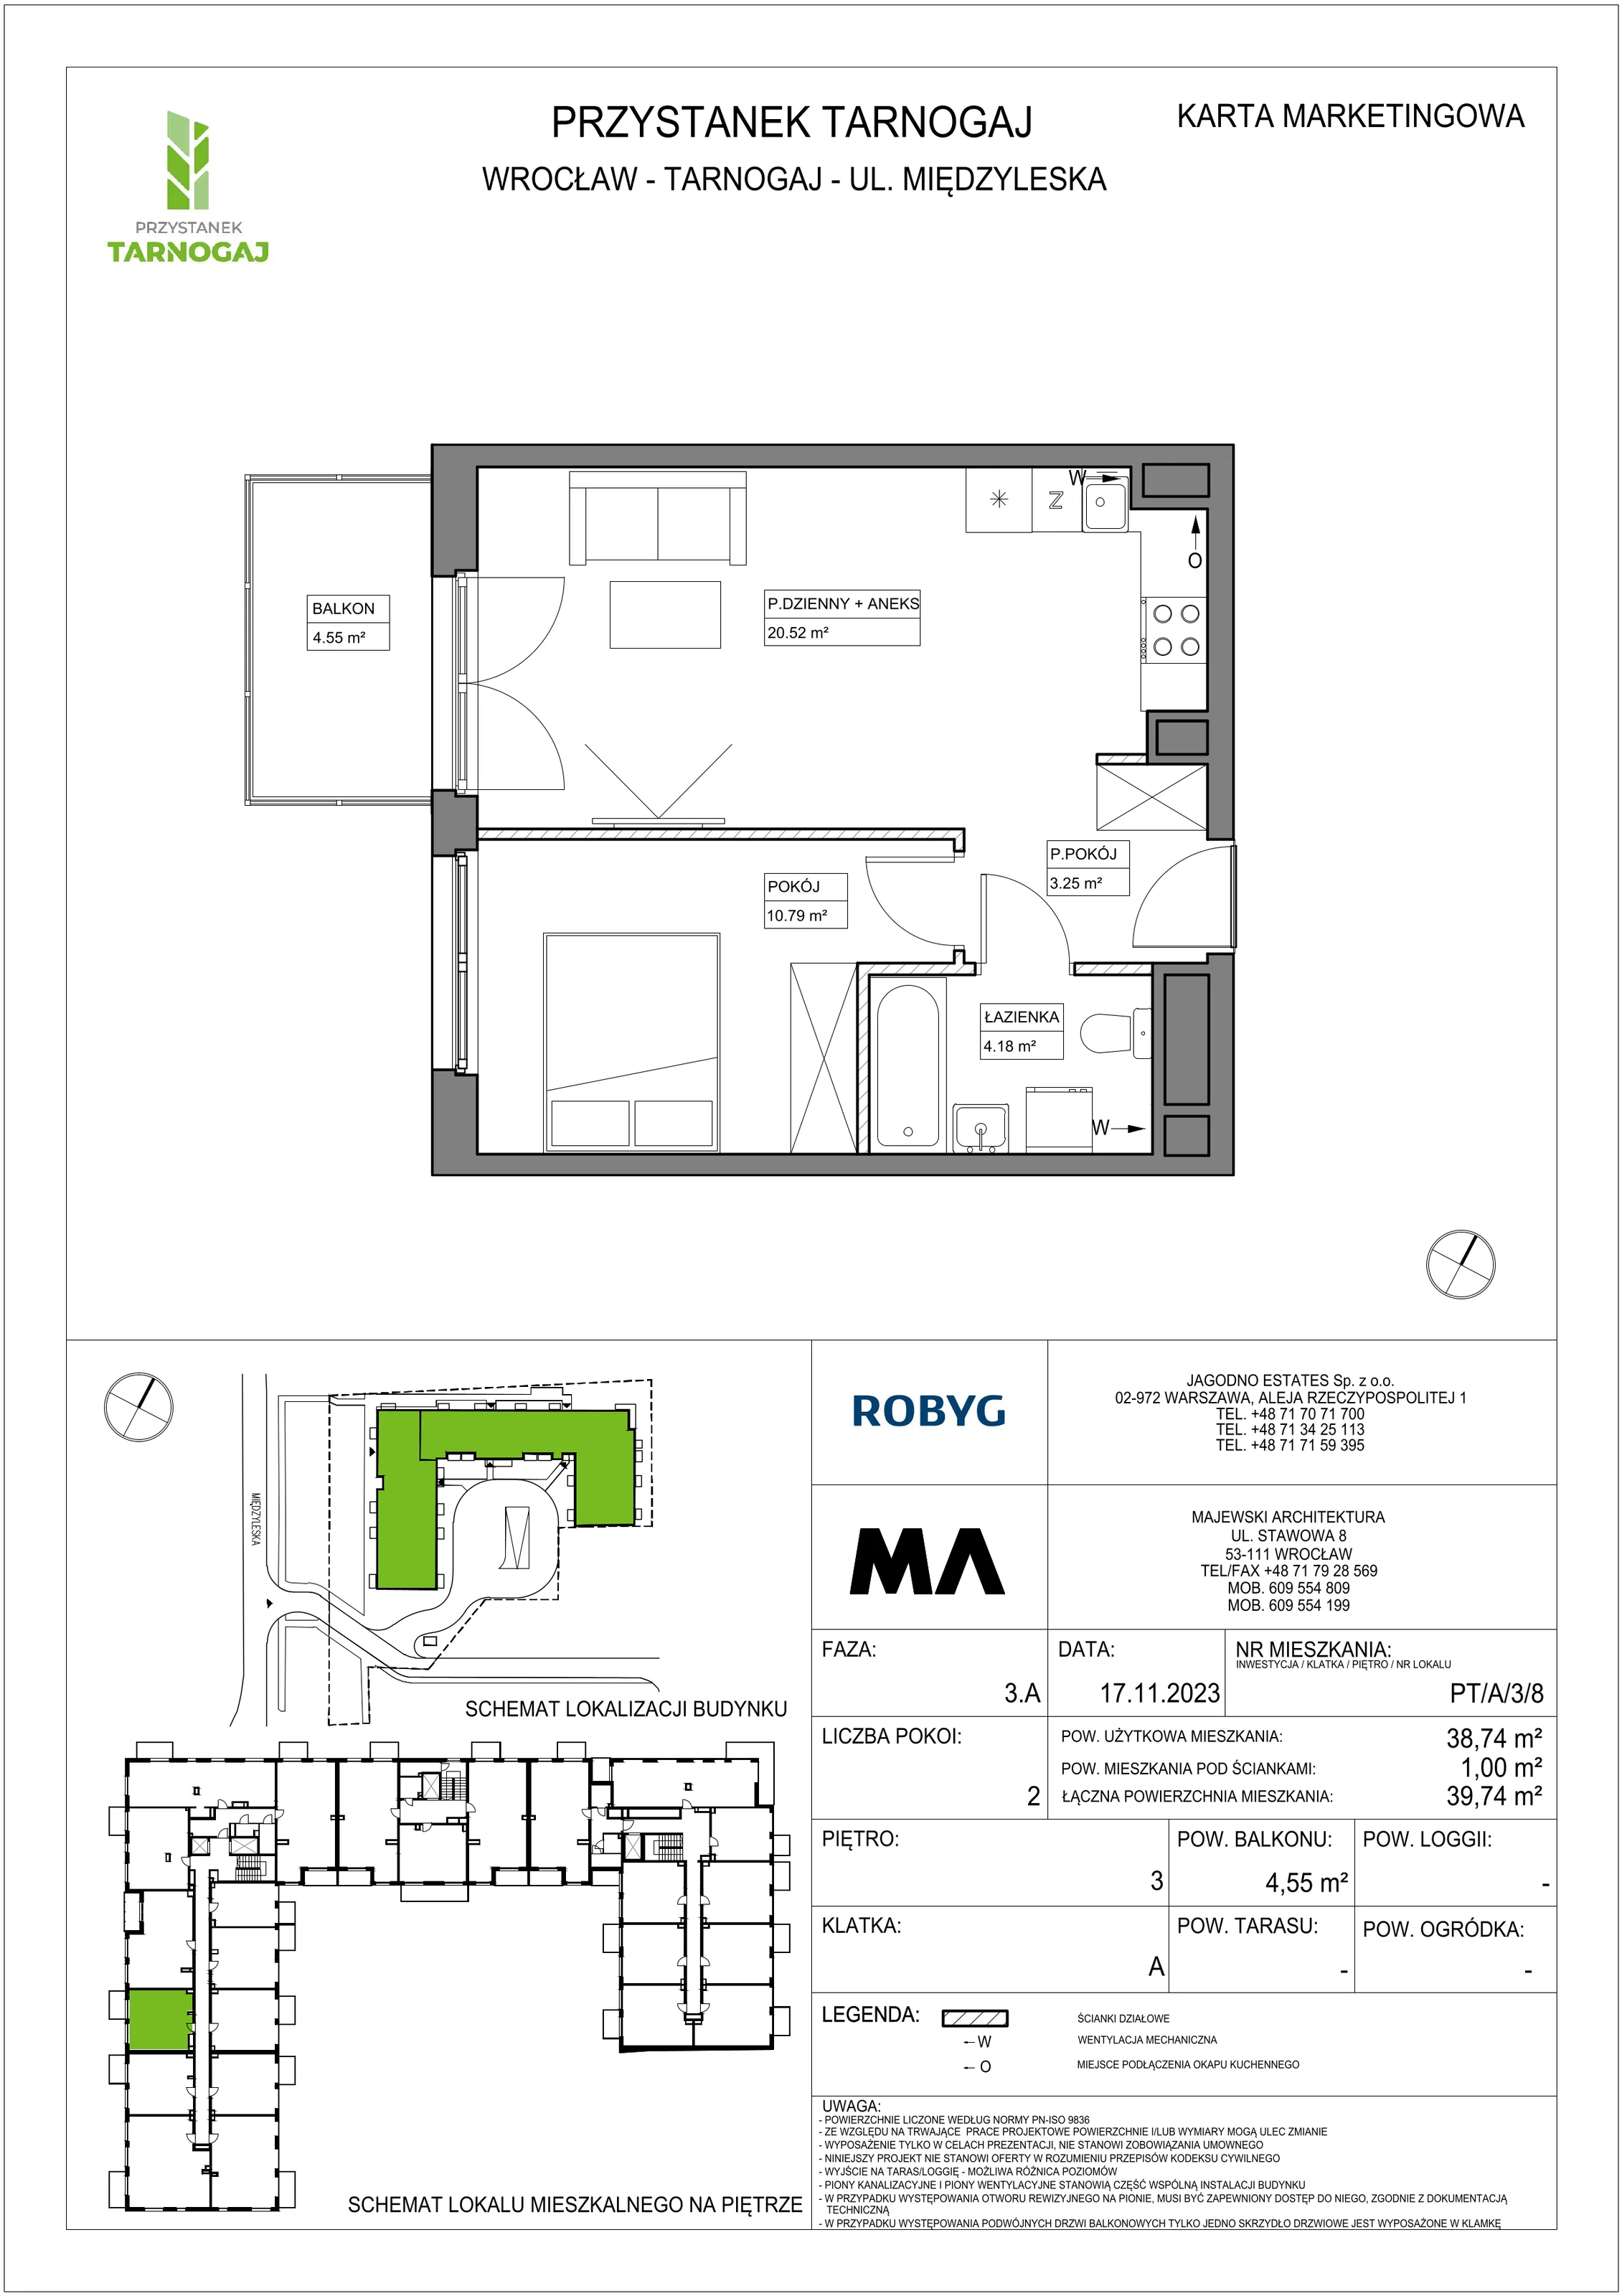 Mieszkanie 38,74 m², piętro 3, oferta nr PT/A/3/8, Przystanek Tarnogaj, Wrocław, Tarnogaj, Krzyki, ul. Międzyleska / Gazowa